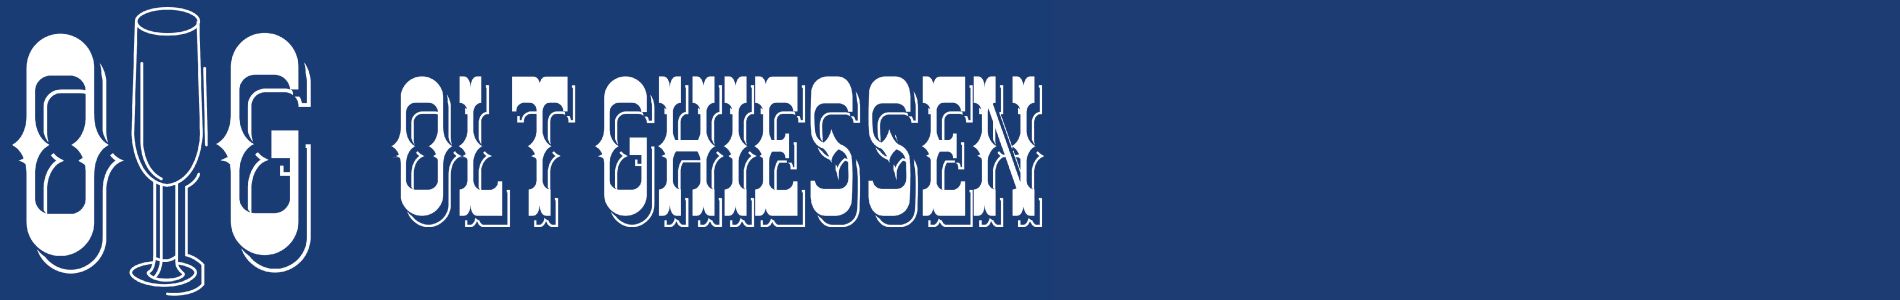 TEST Website Olt Ghiessen